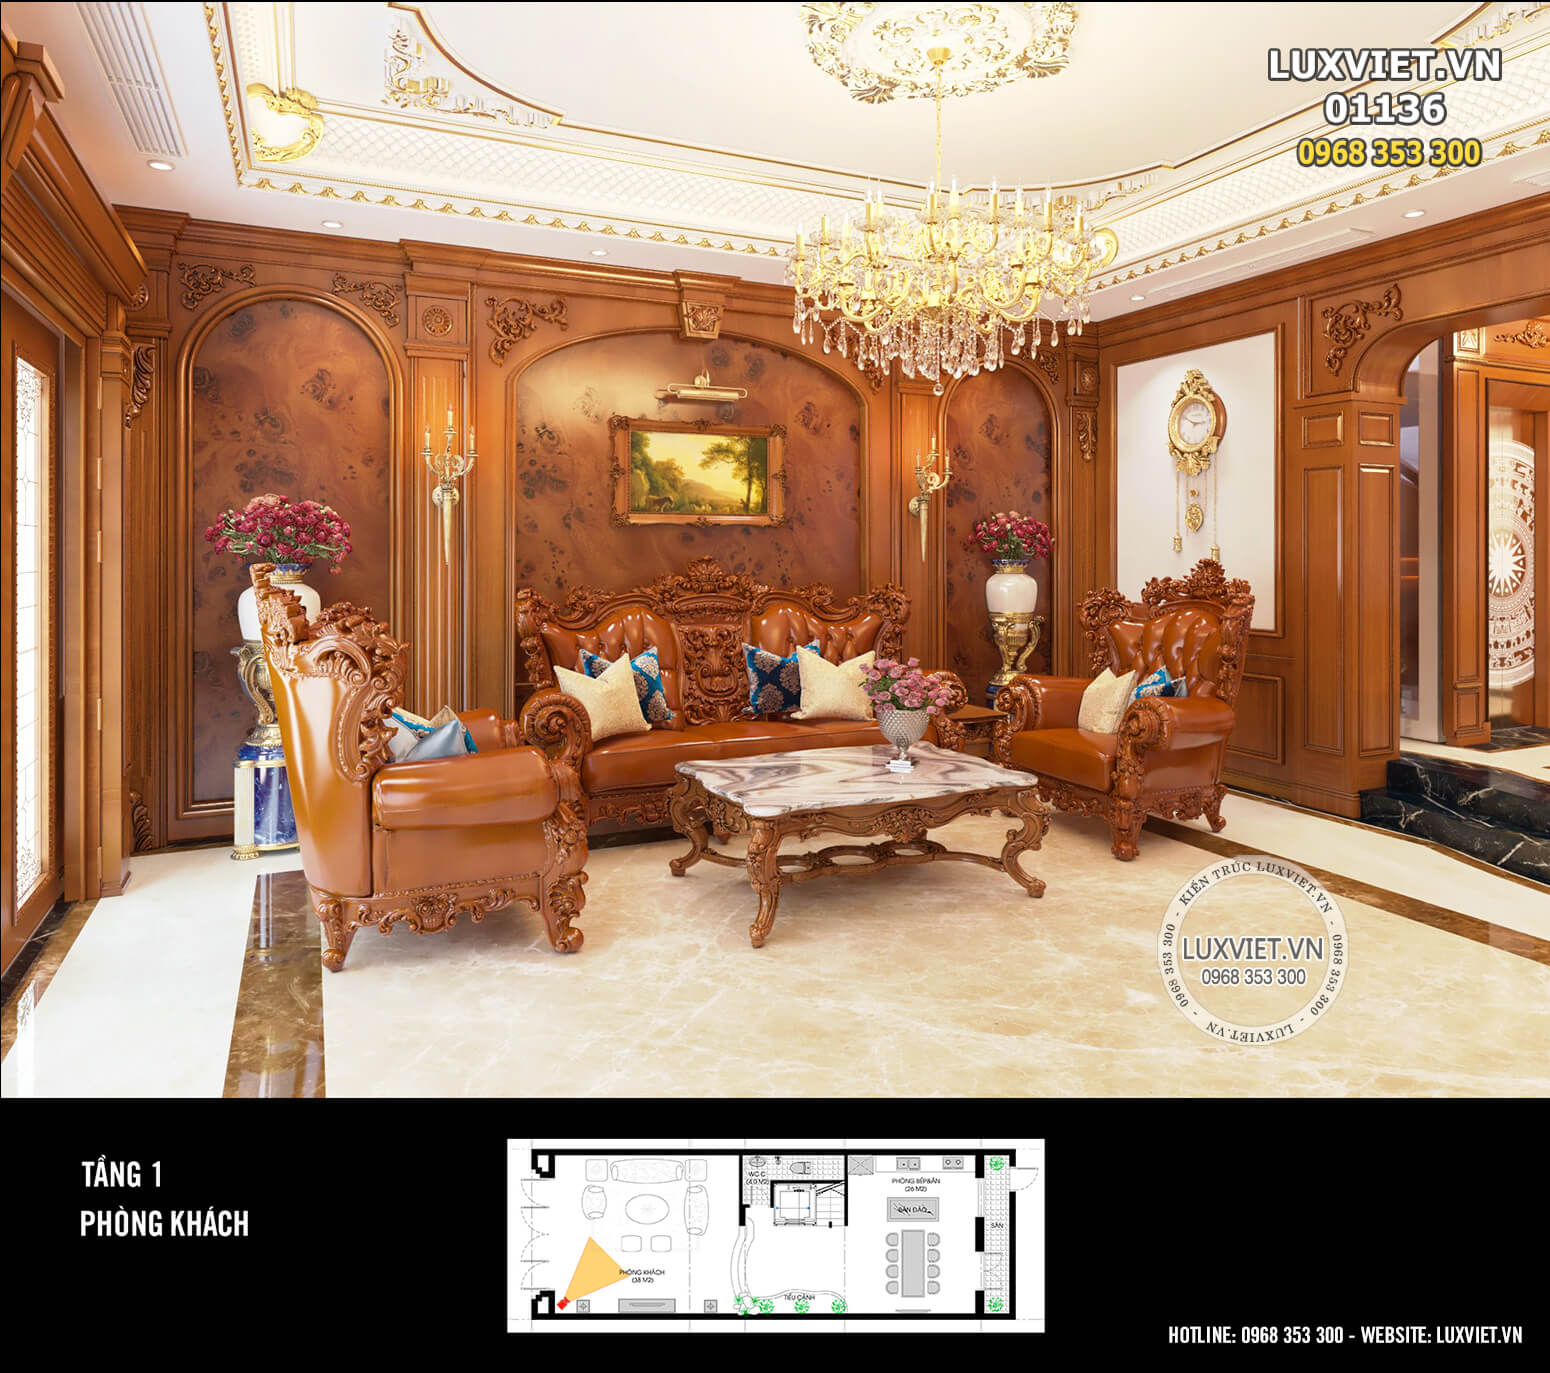 Thiết kế nội thất phòng khách sang trọng với diện tường trang trí bằng gỗ quý